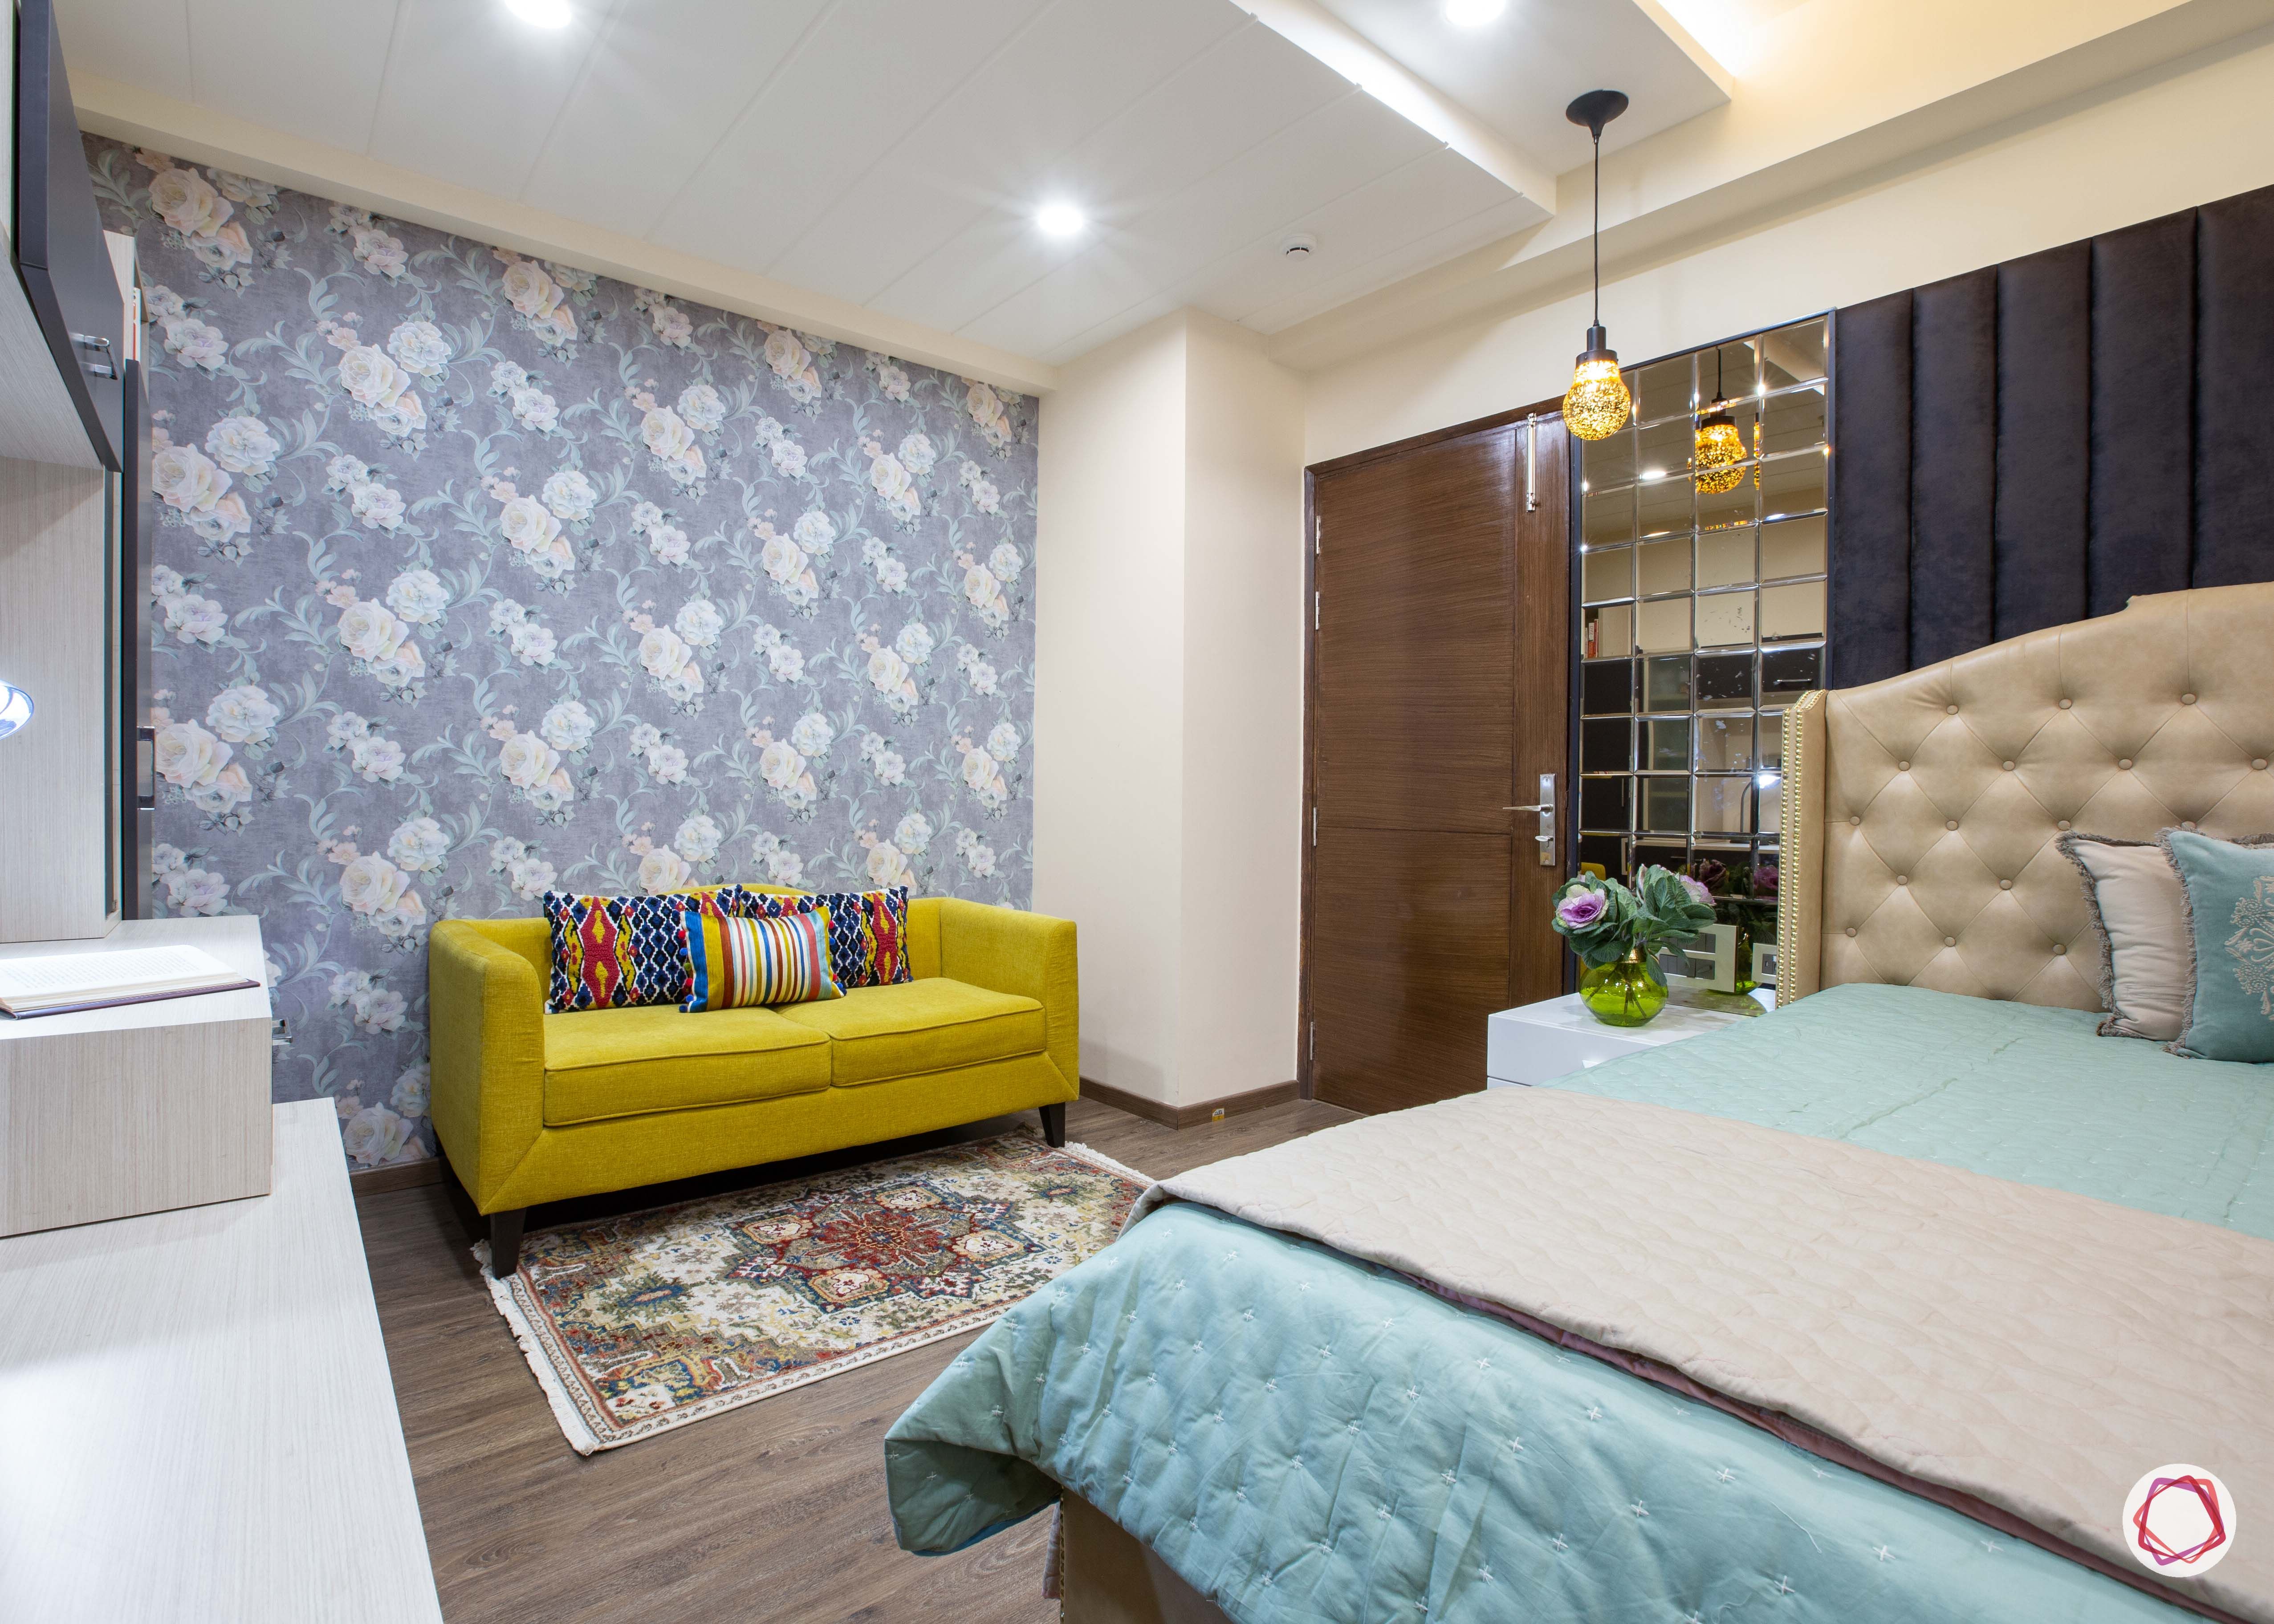 3 bhk flats in noida  master bedroom wallpaper